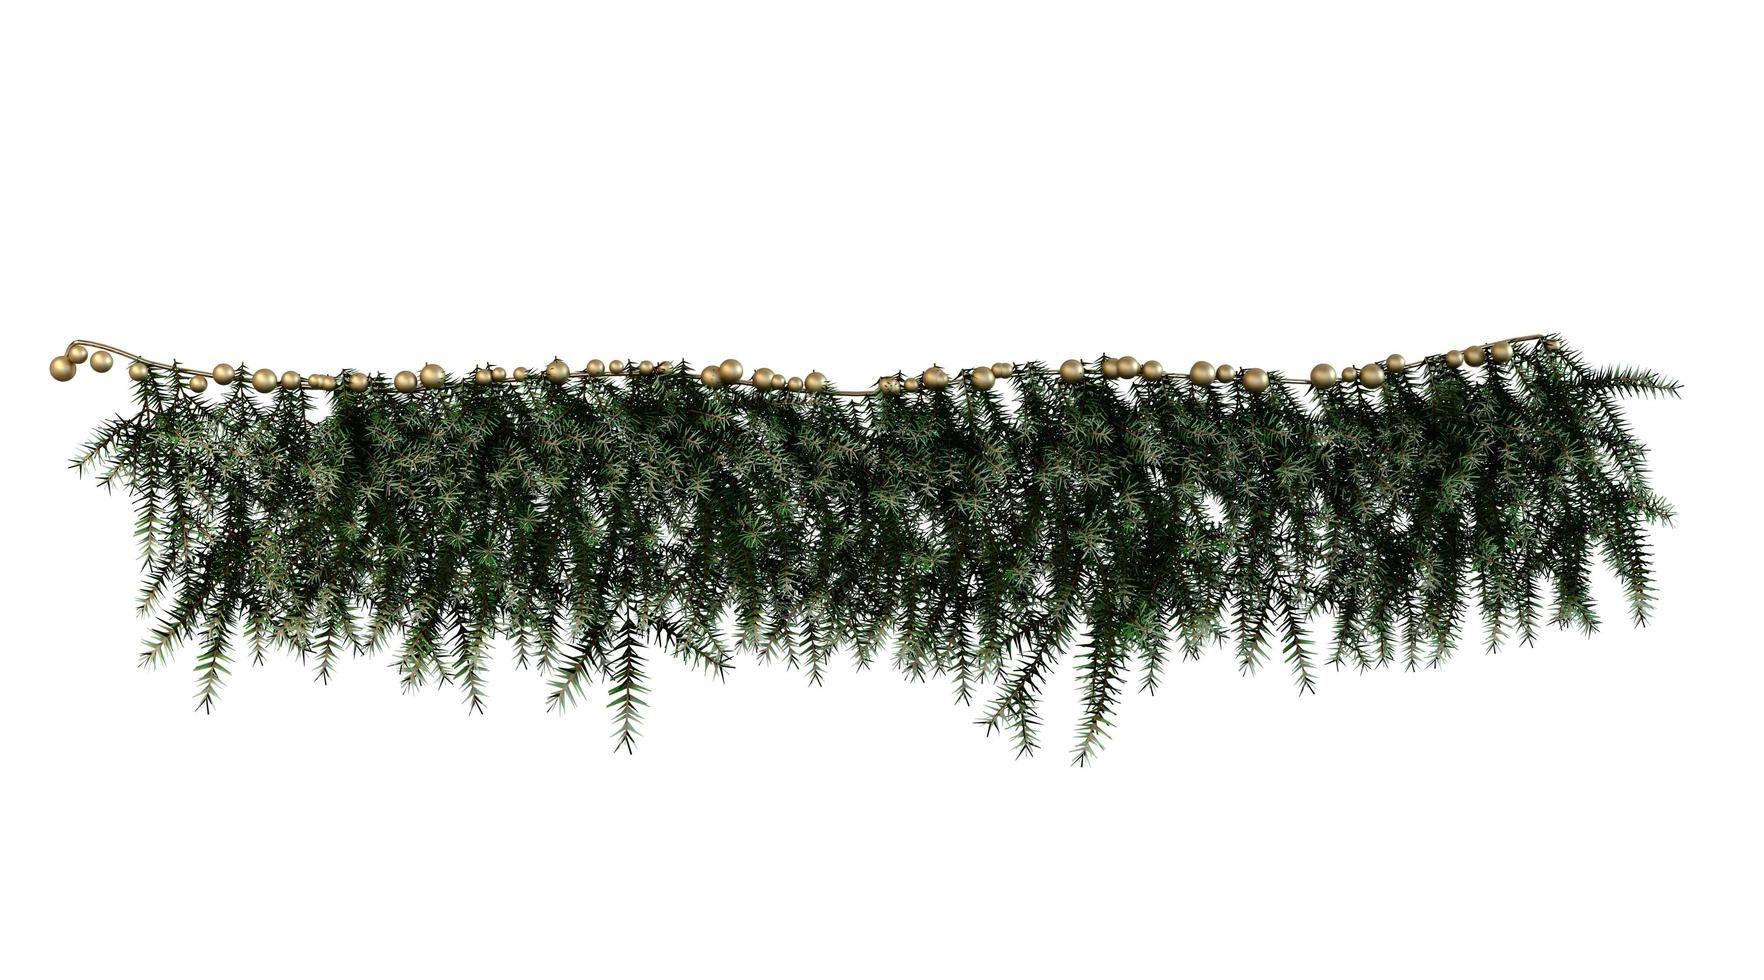 sierplant van glazen boombladeren 3D-rendering foto